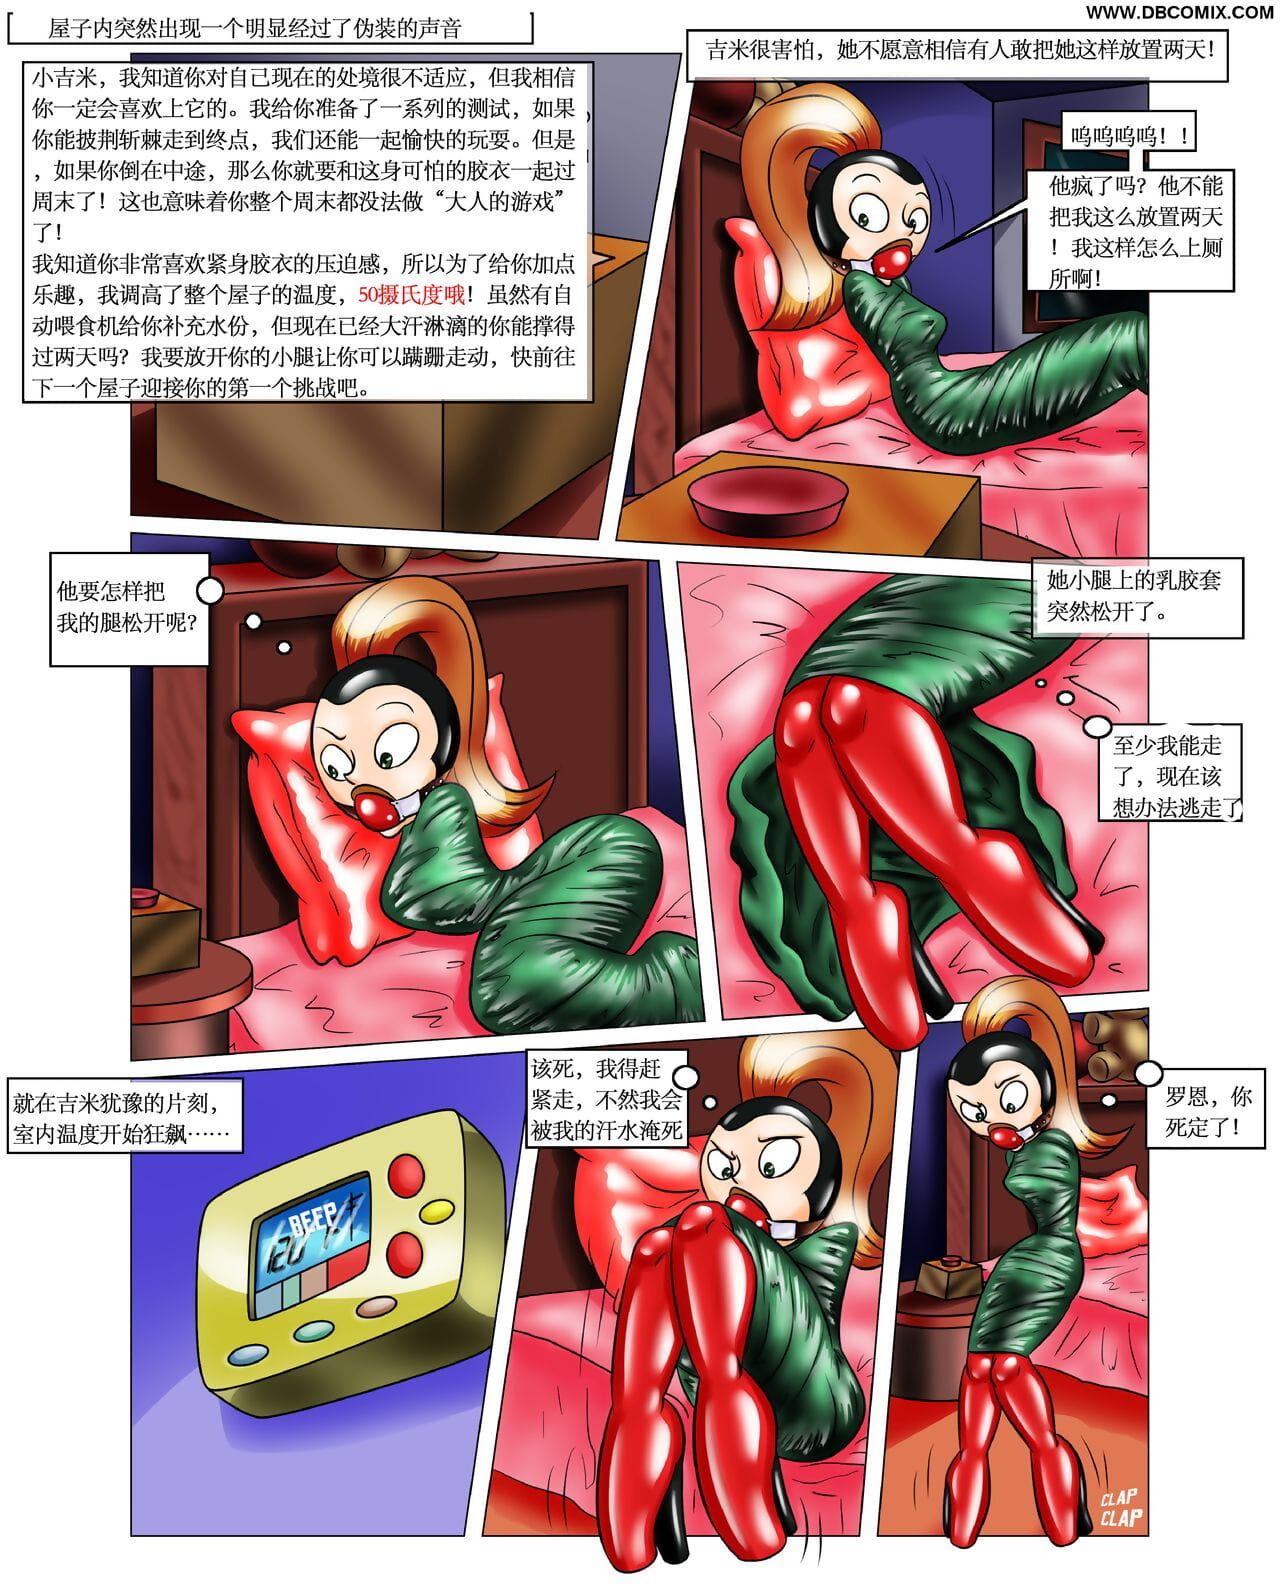 incroyablement obscène the picture Cadeau 【大头翻译】 page 1